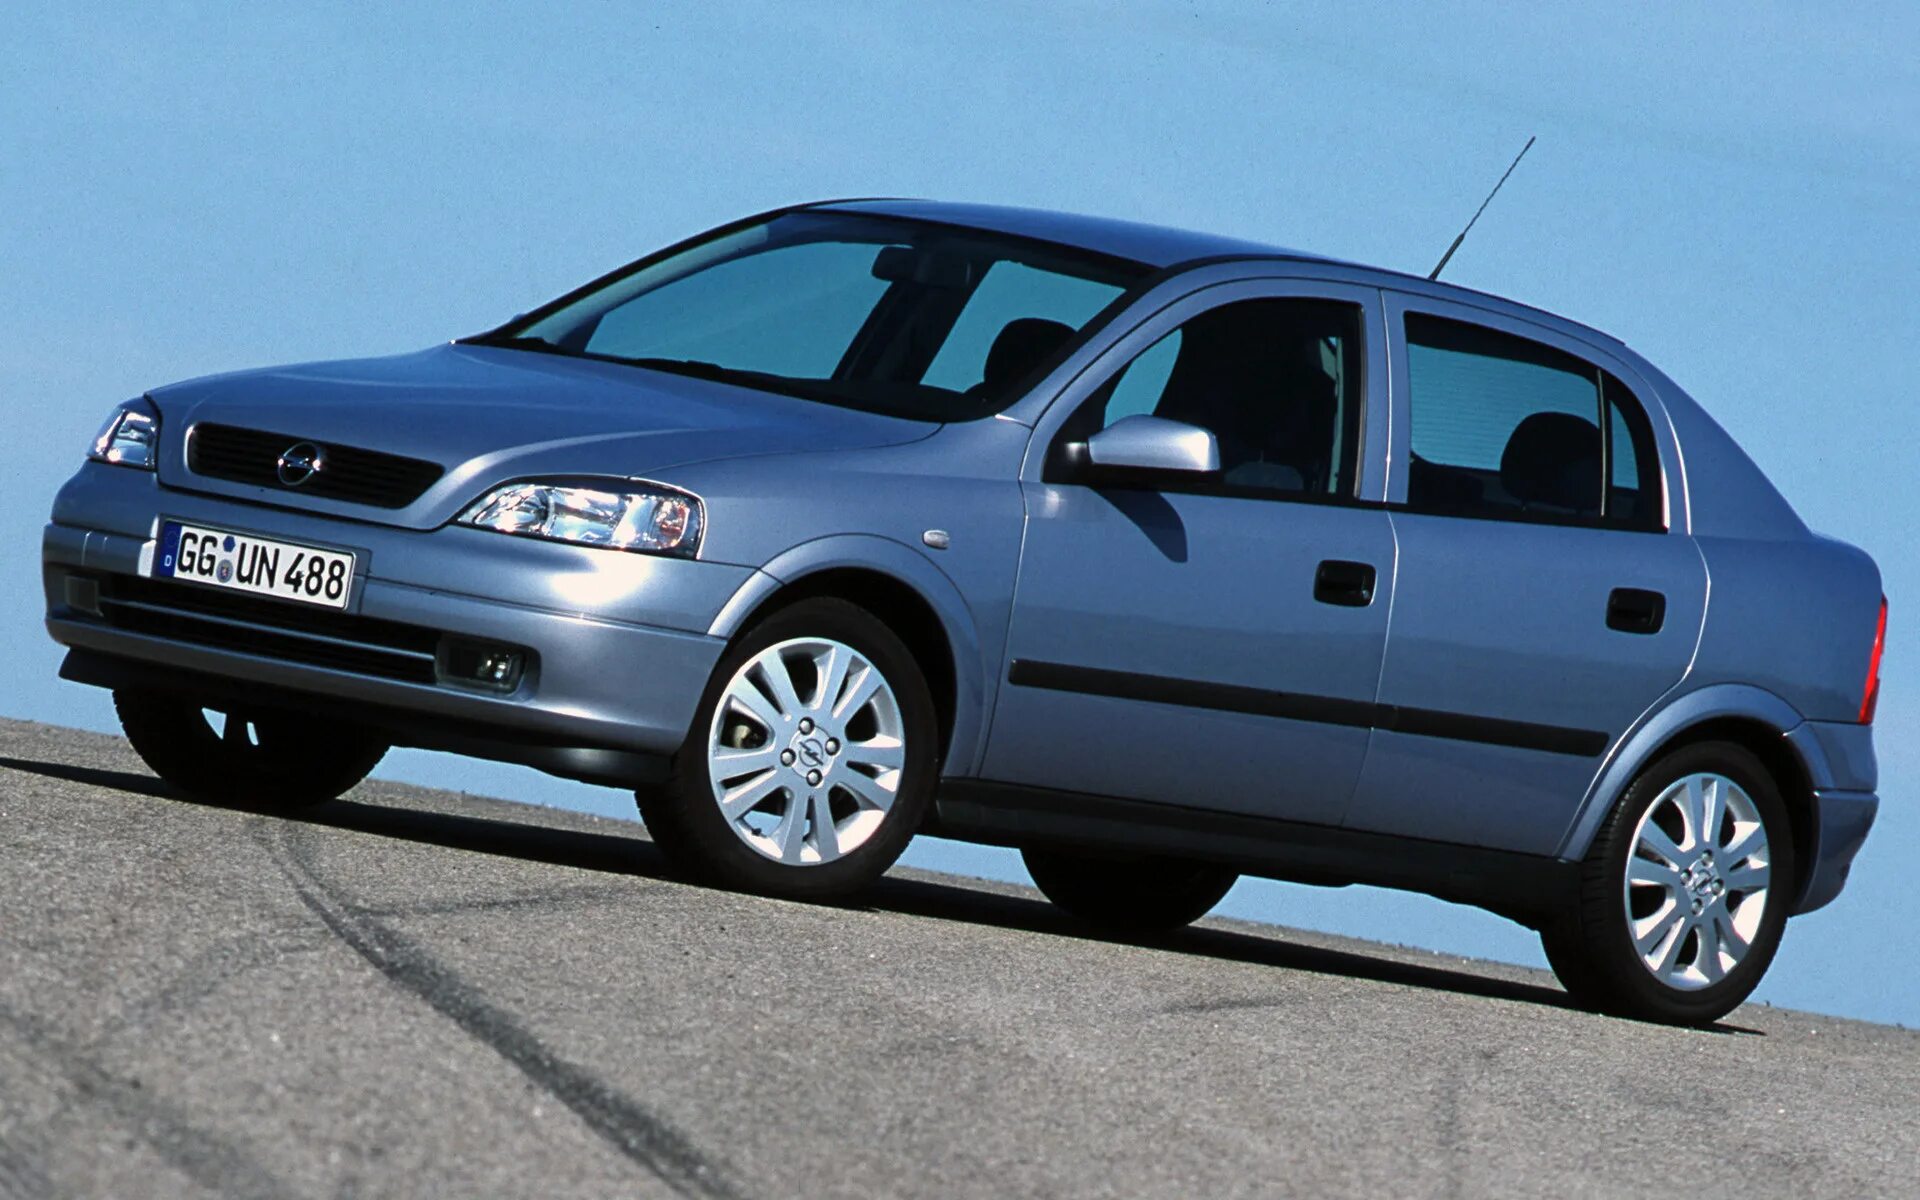 2002 г по 2005 г. Opel Astra g 1998-2004. Opel Astra g 2000. Opel Astra g 1998 хэтчбек.